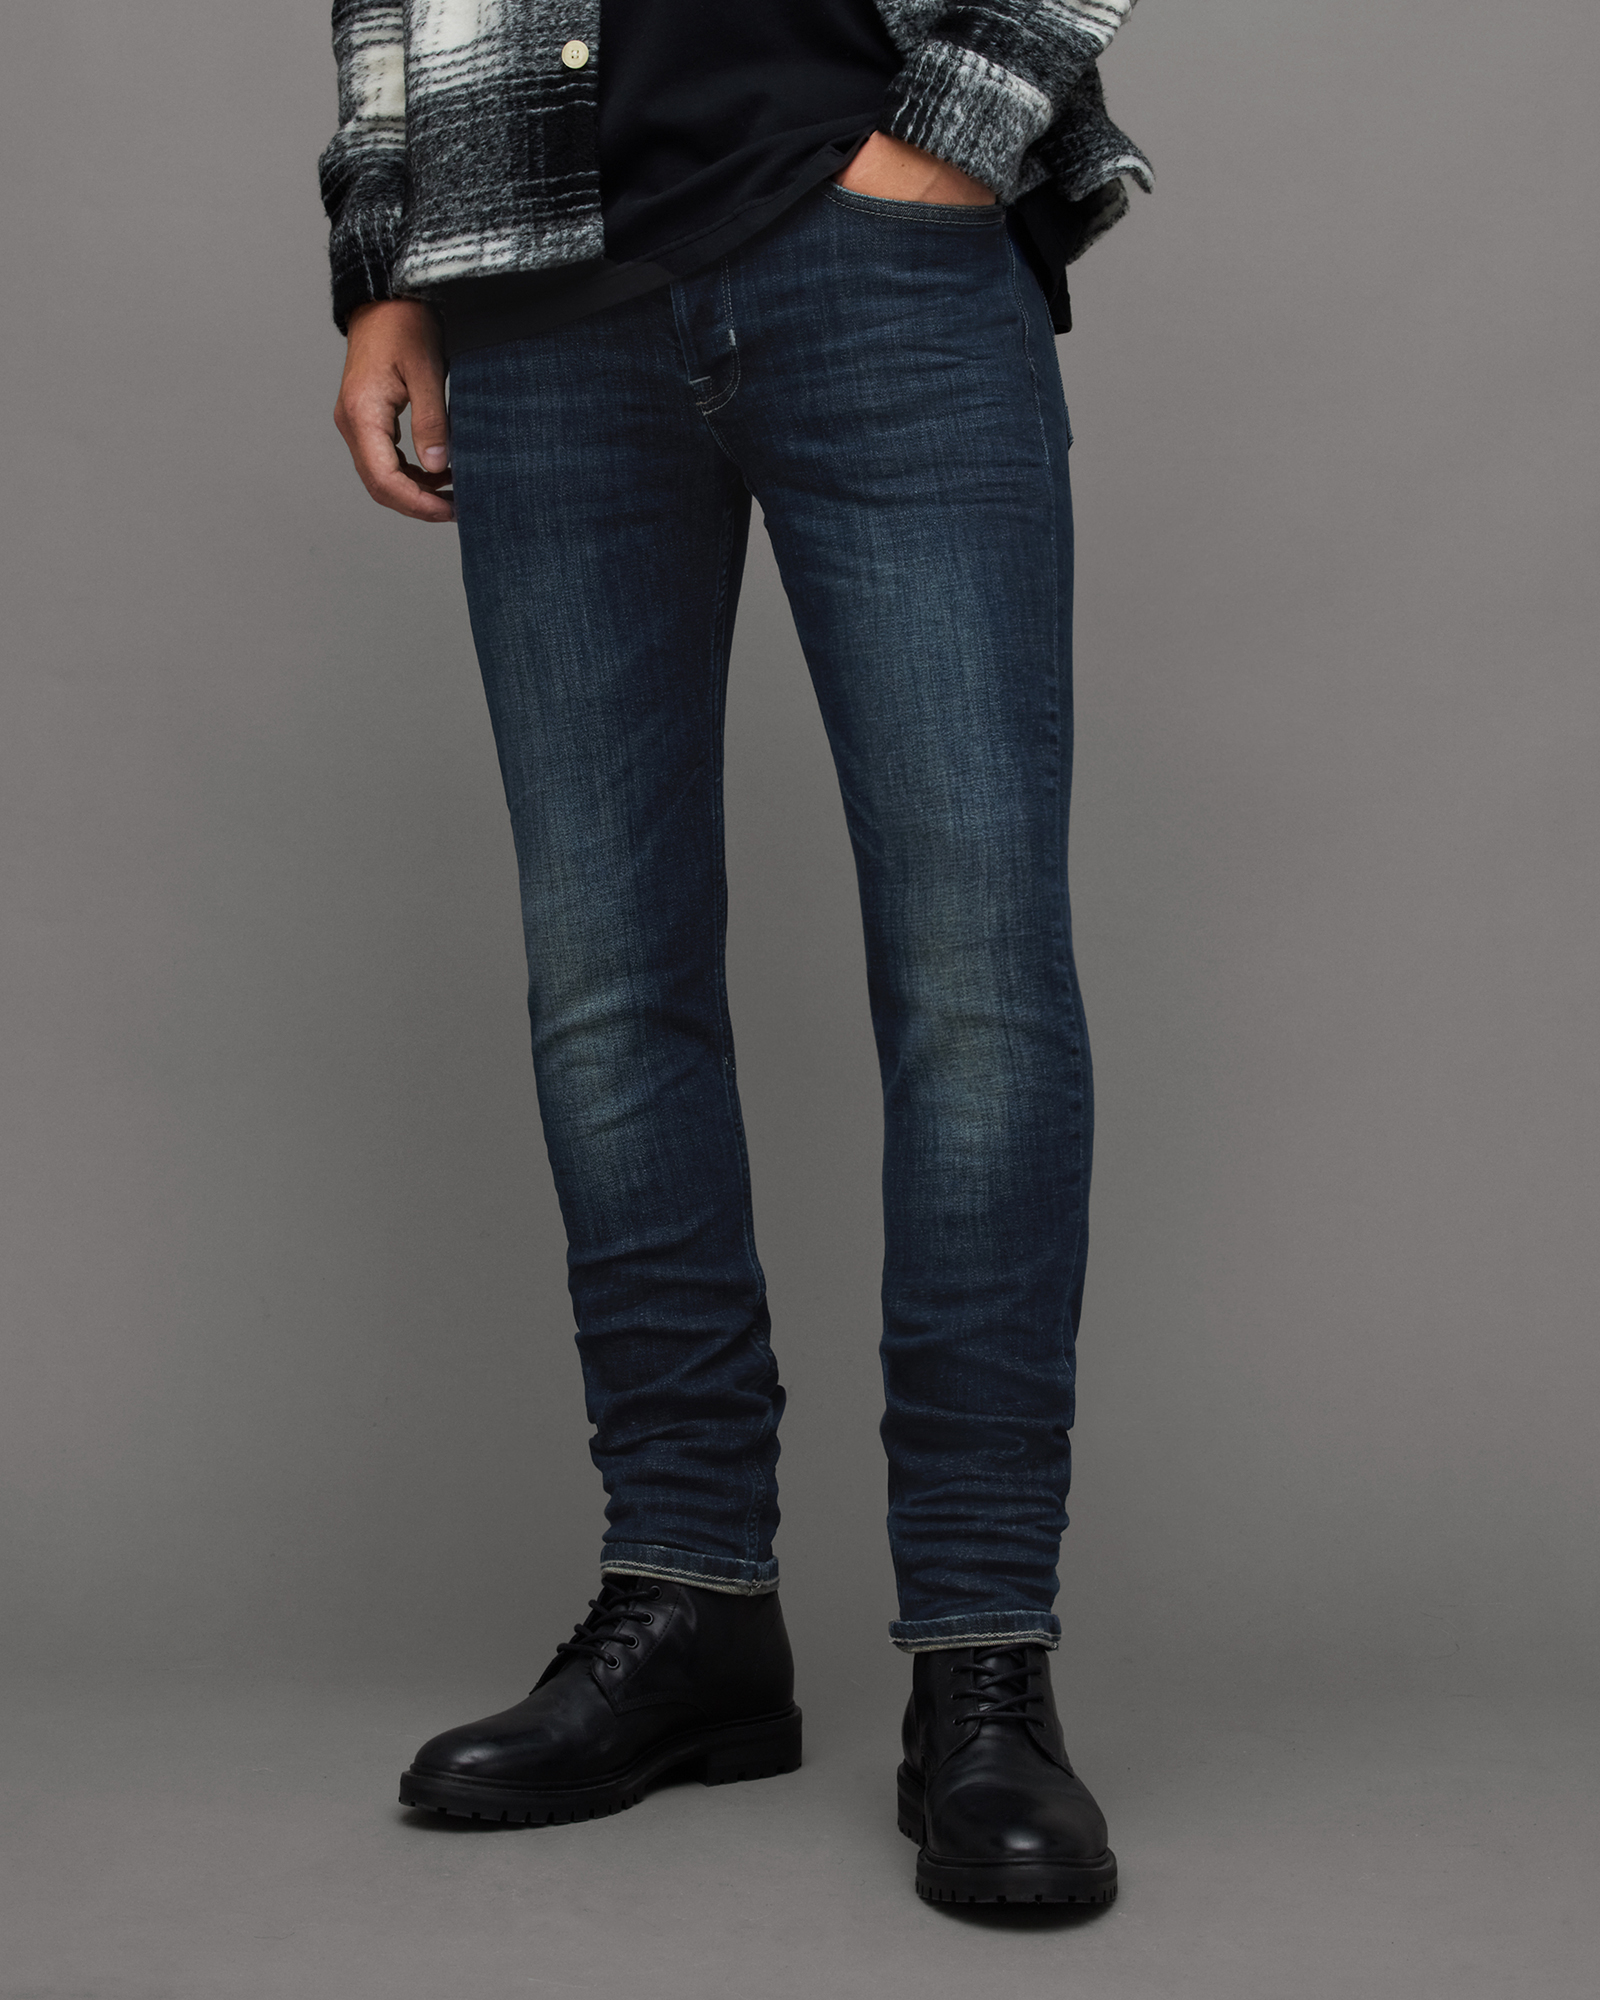 AllSaints Men's Cotton Traditional Rex Slim Jeans, Blue, Size: 32/L32